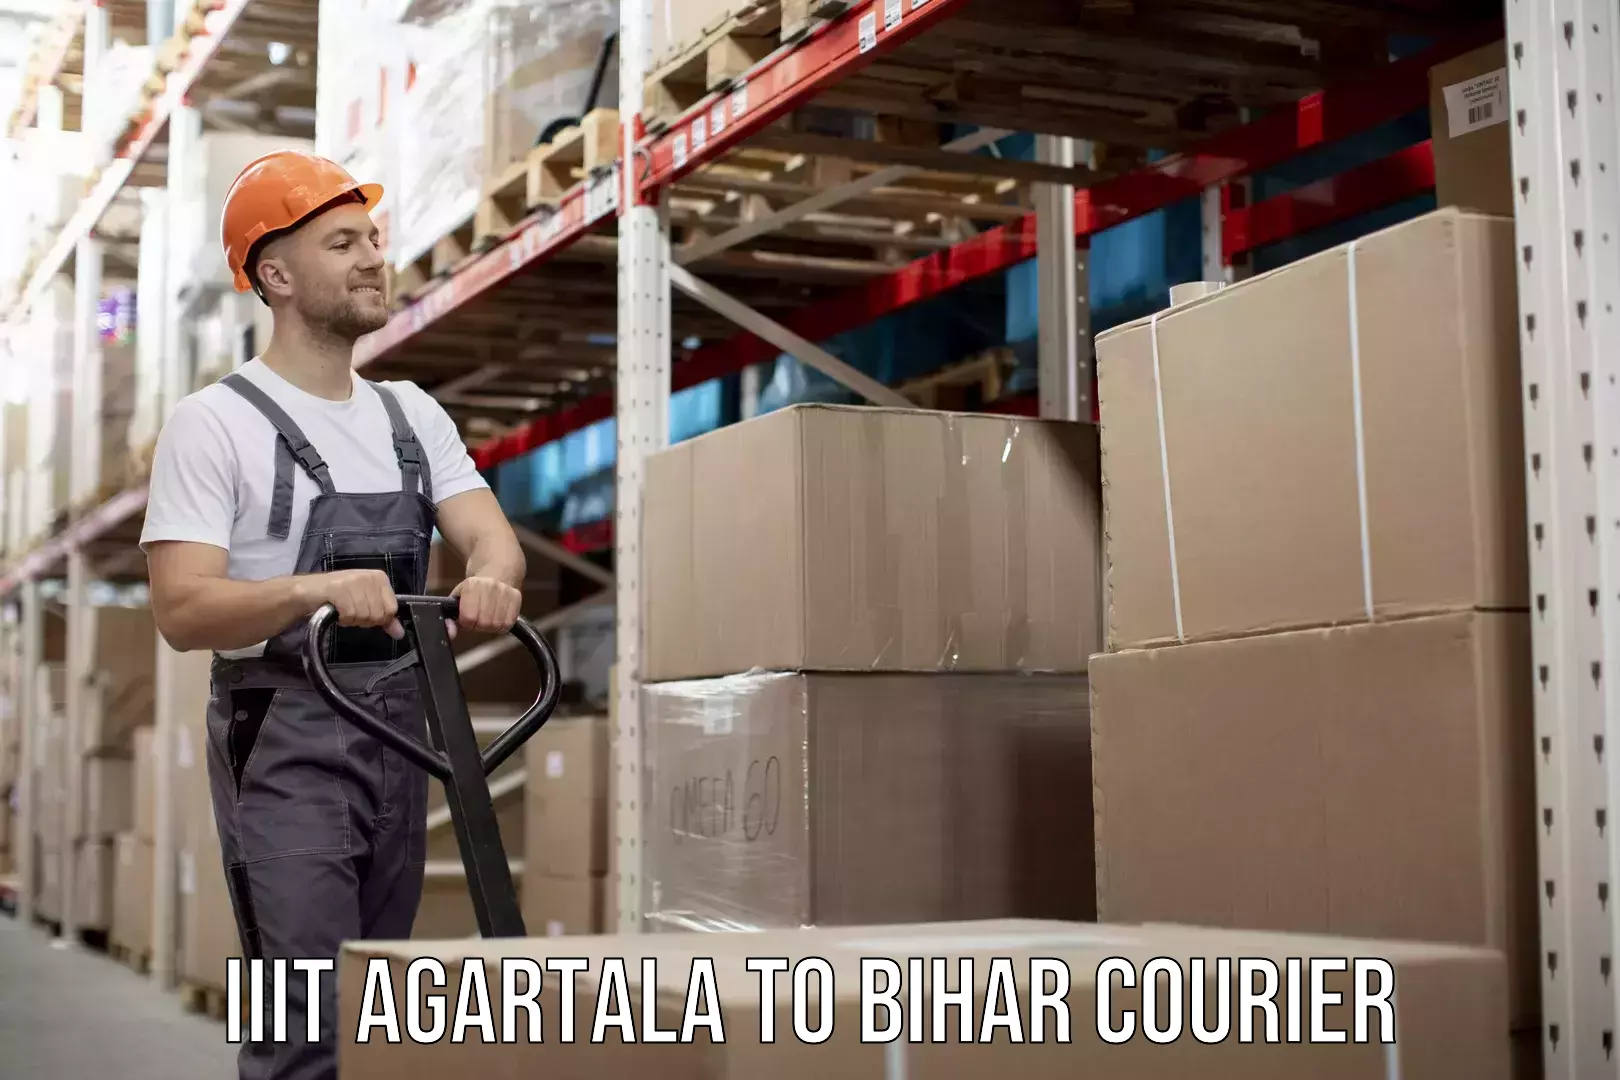 Tailored freight services IIIT Agartala to Bihar